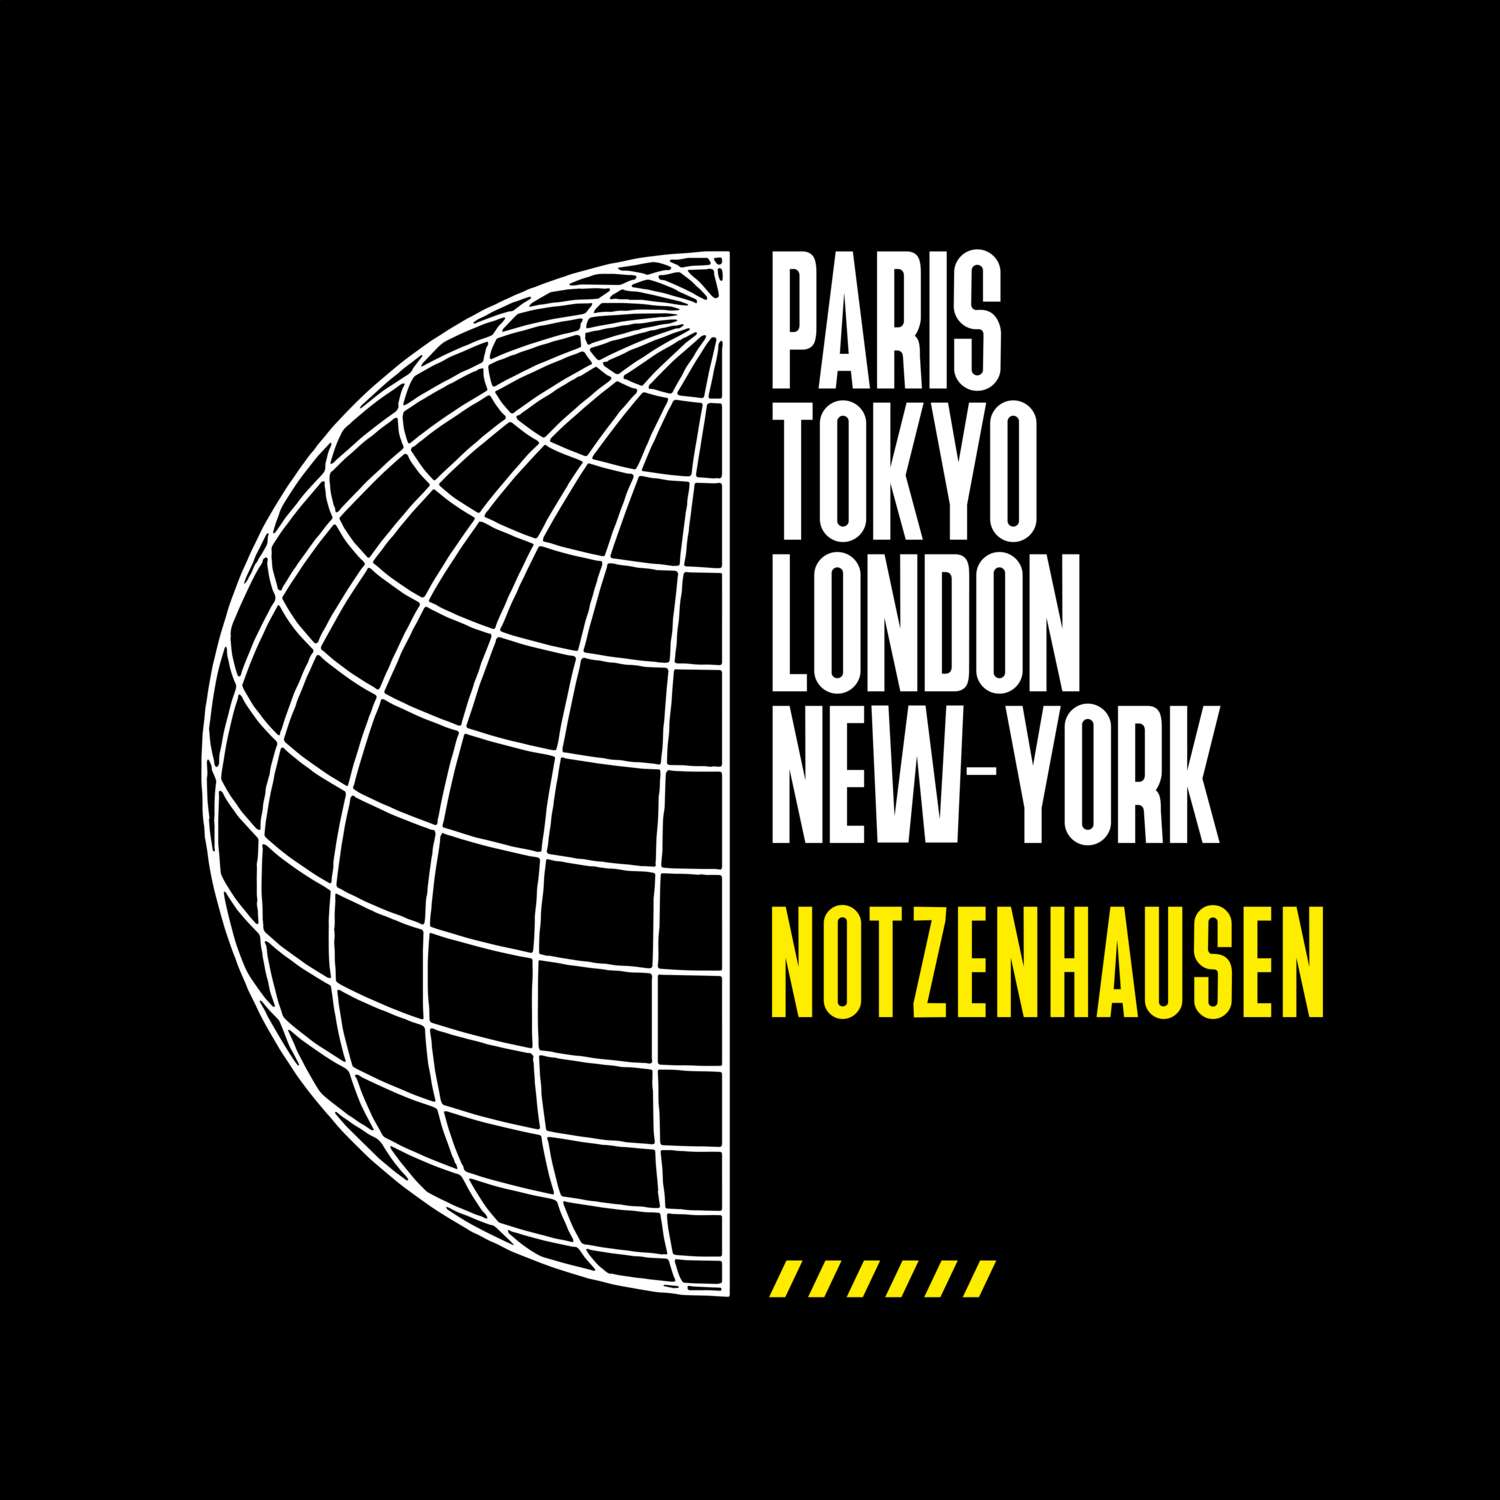 Notzenhausen T-Shirt »Paris Tokyo London«